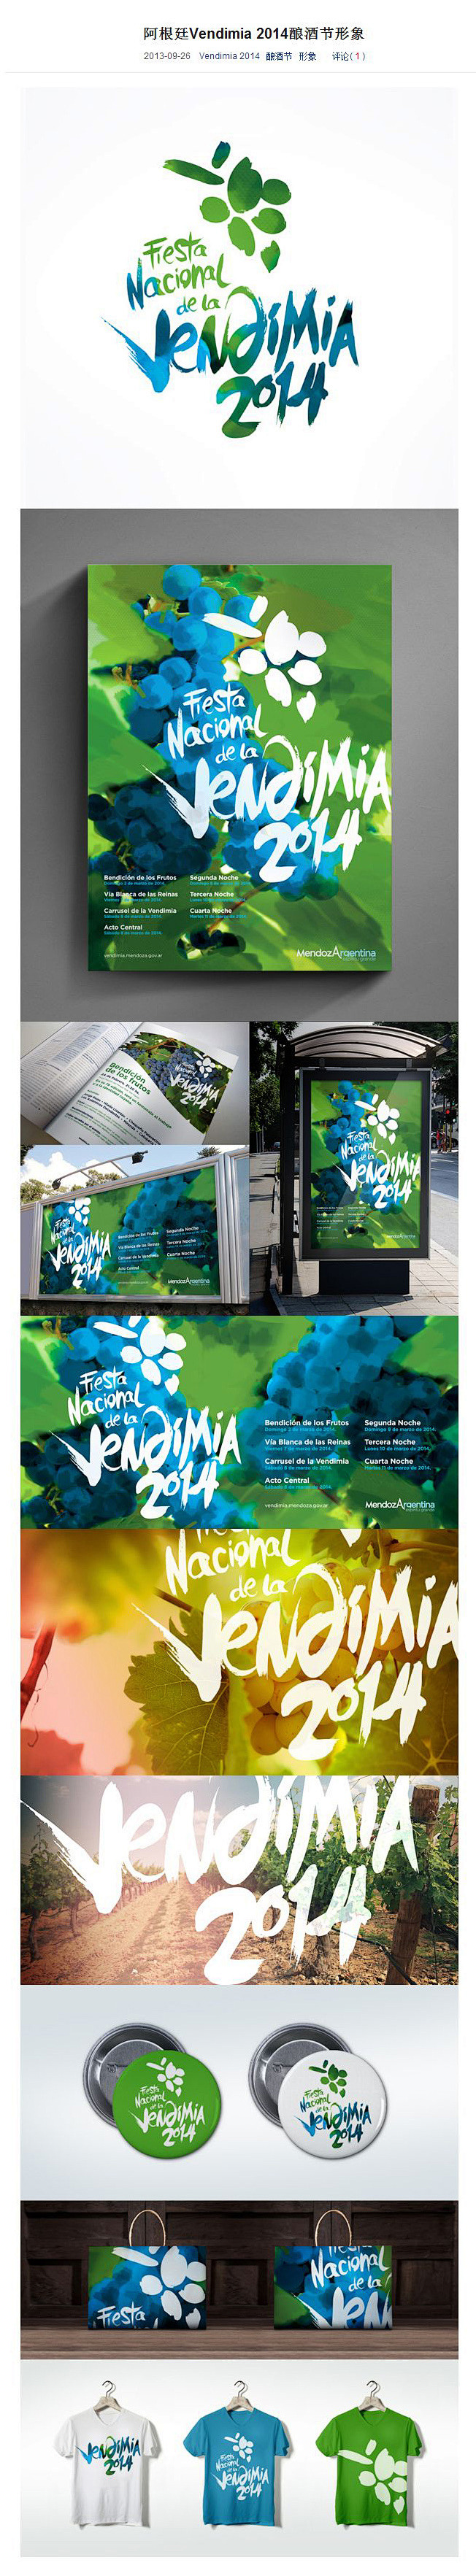 阿根廷Vendimia 2014酿酒节形...